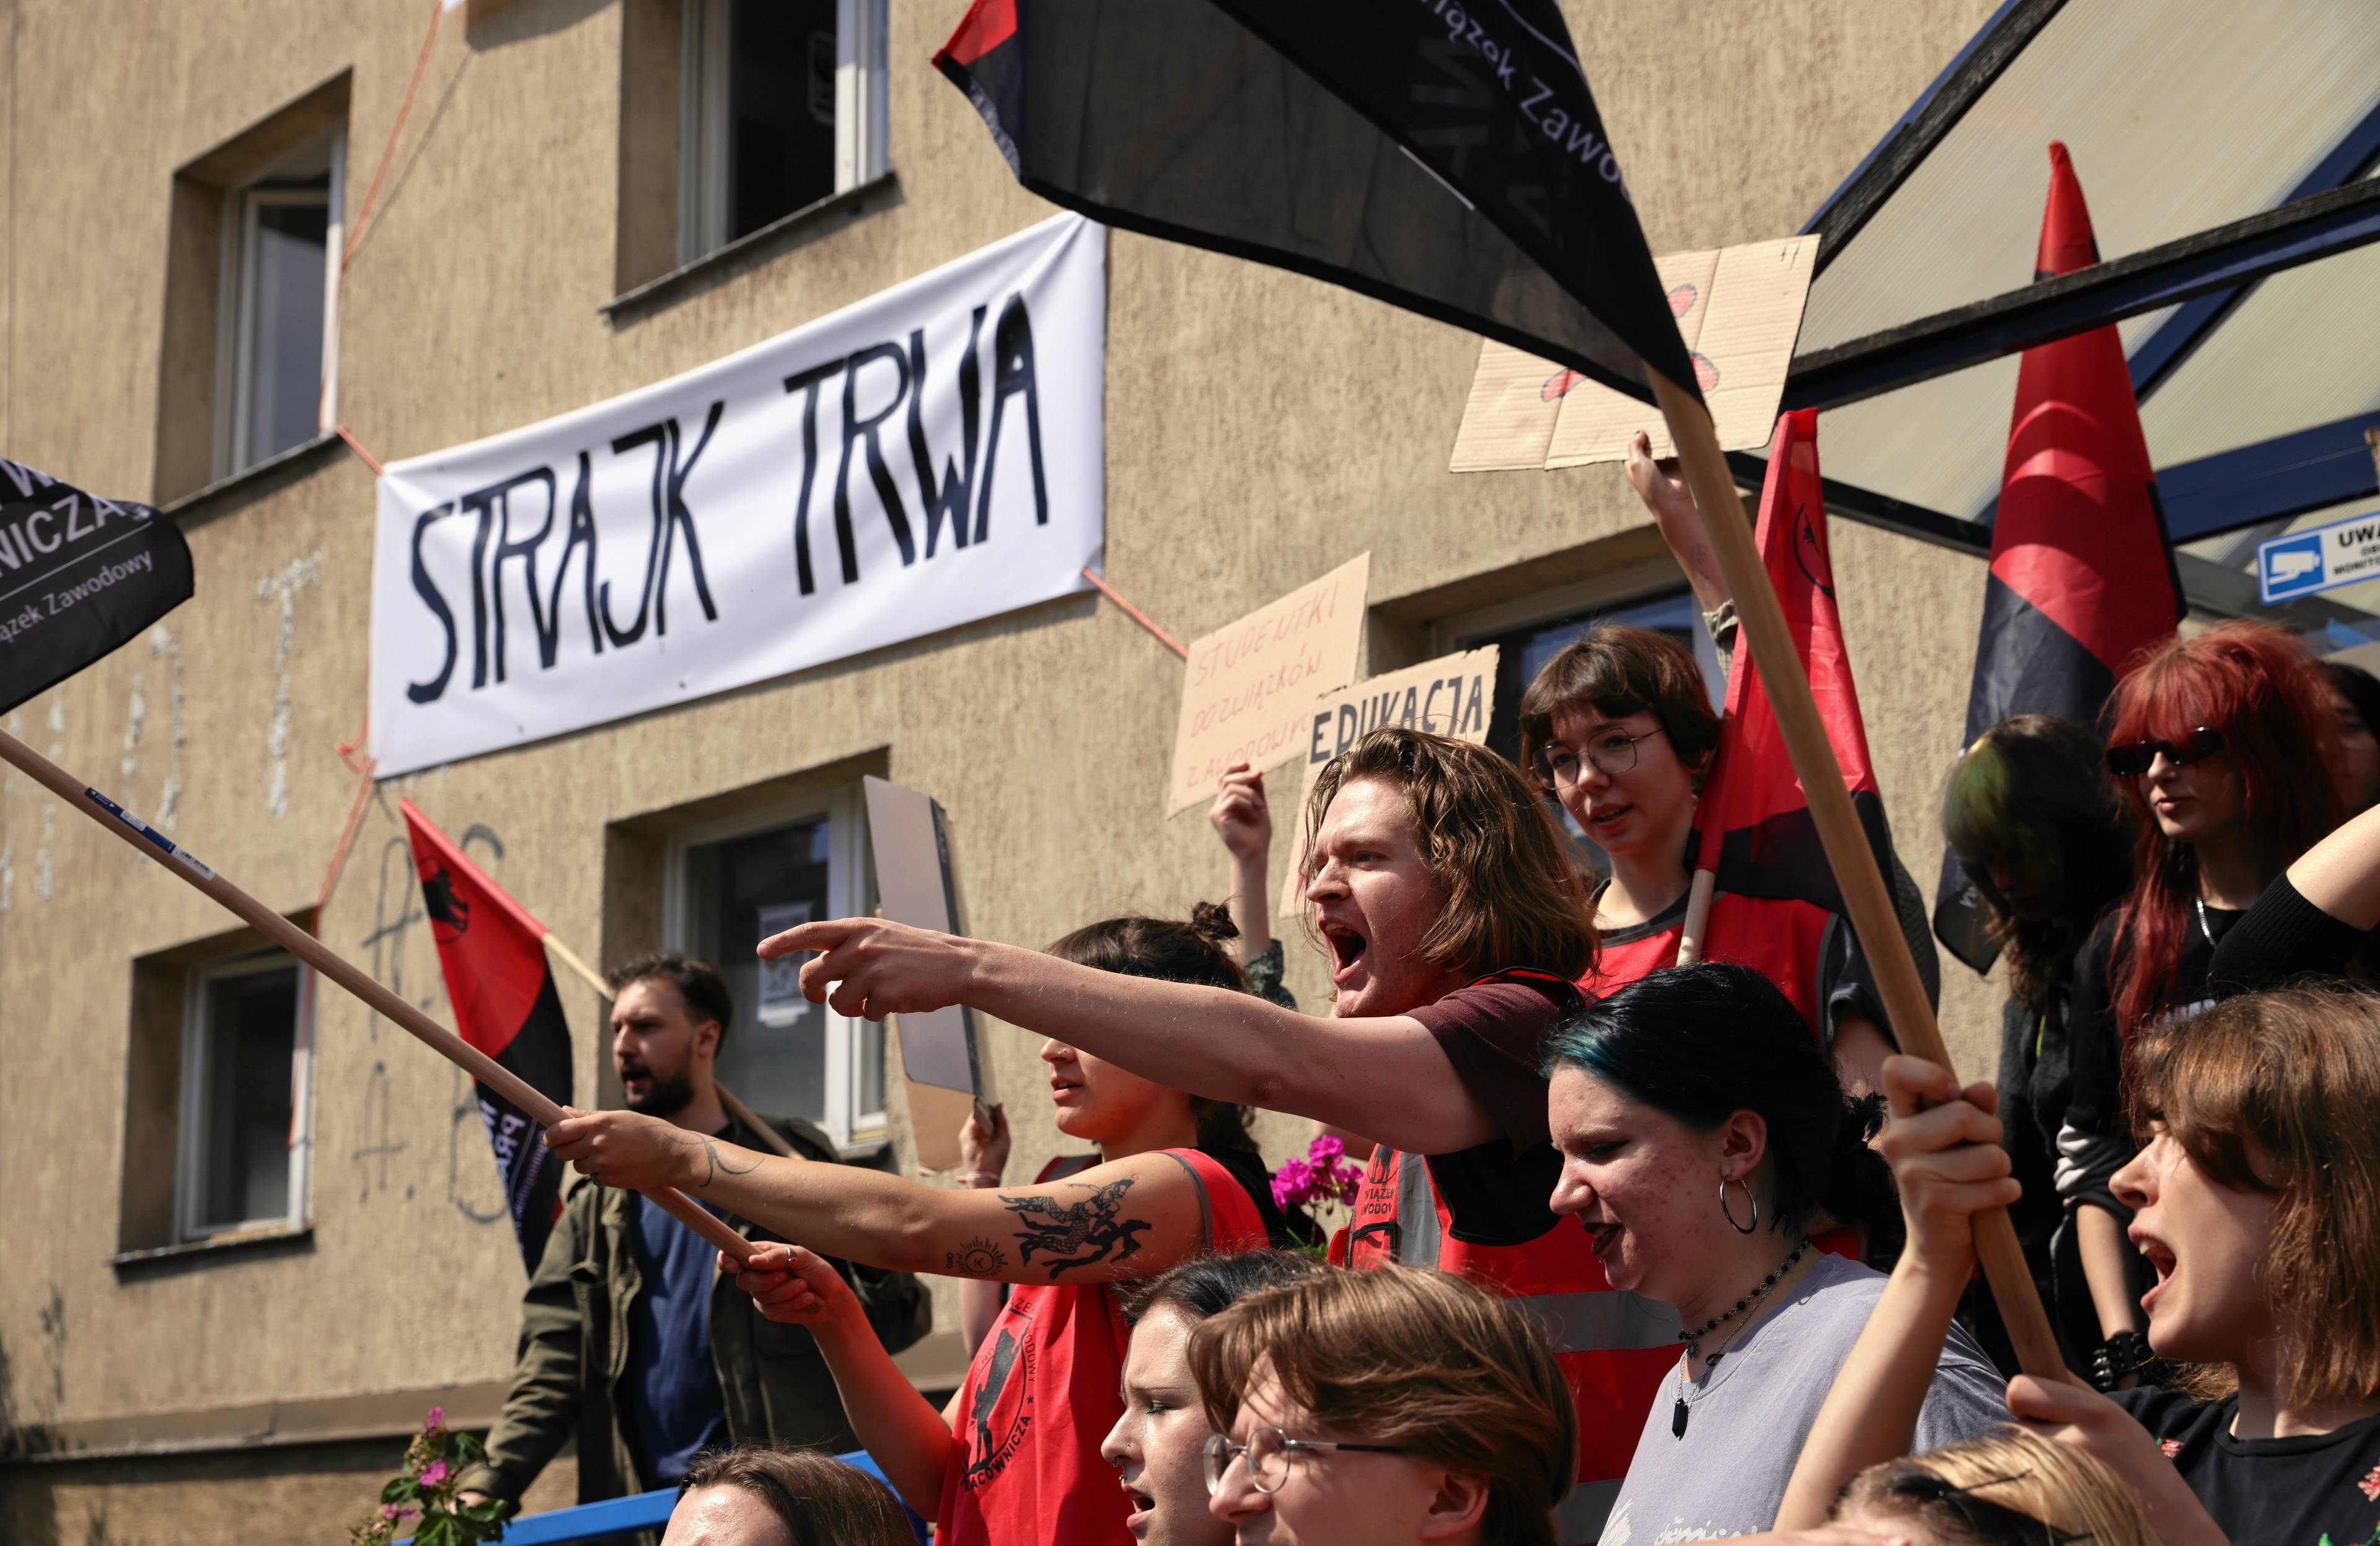 Protestujący przed budynkiem akademika Kamionka w Krakowie machają flagami, w tle napis "strajk trwa"